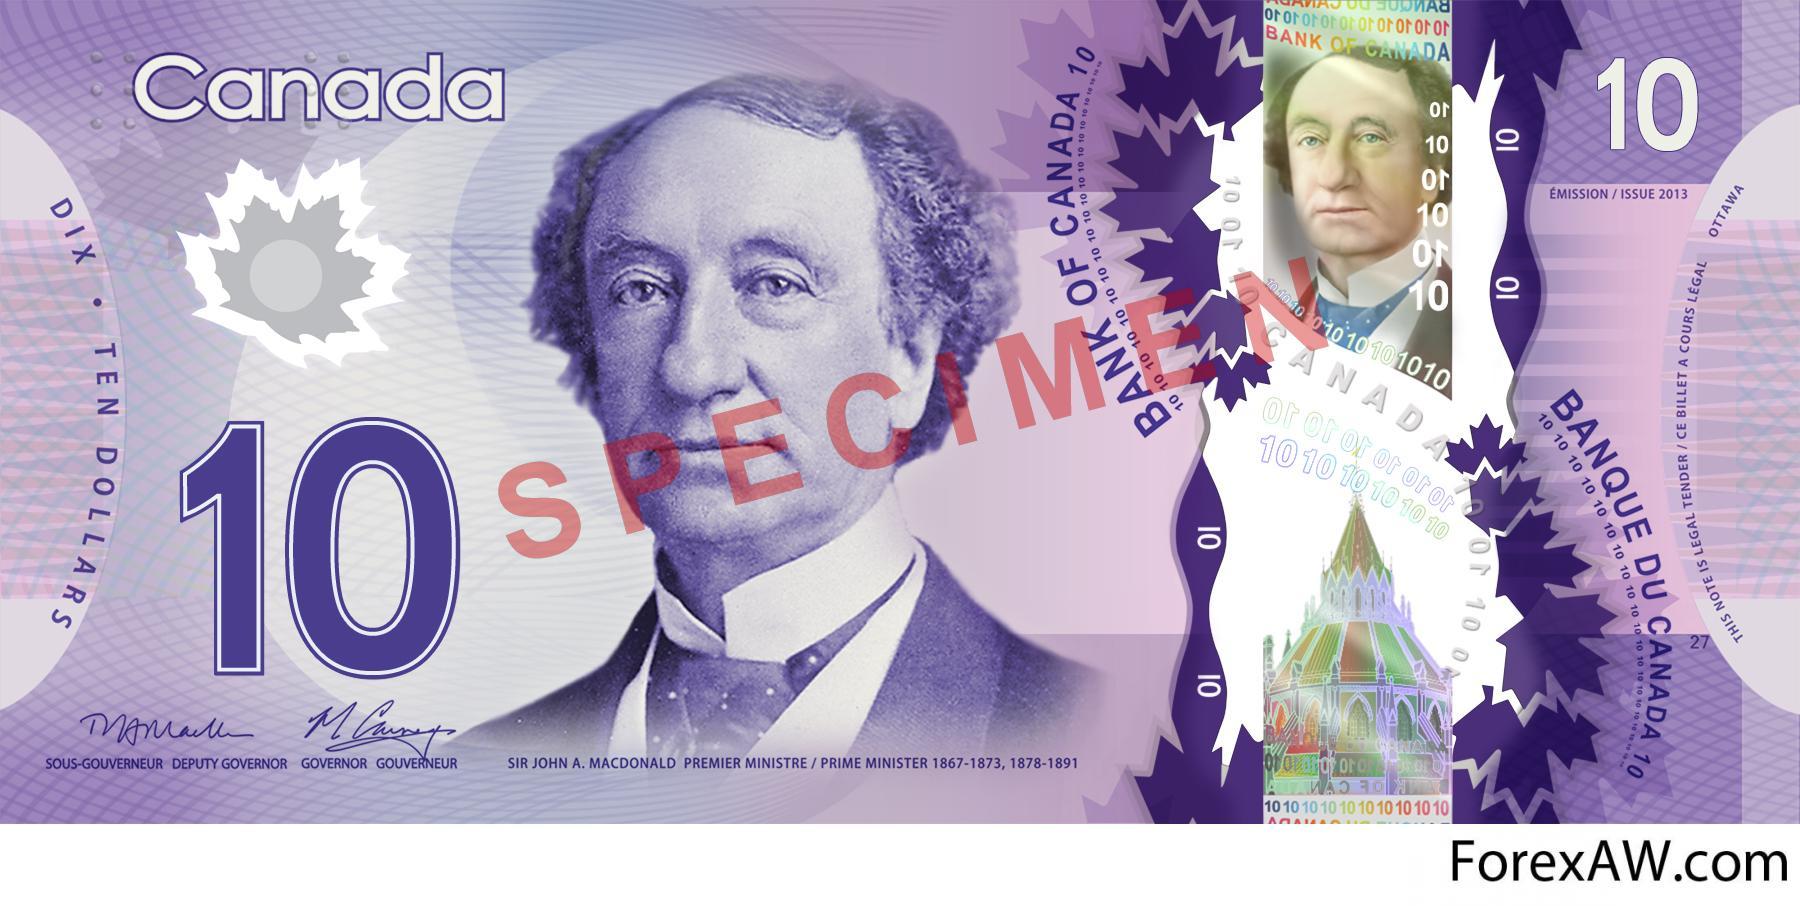 Премьер министр изображенный на 5 евро. Канадский доллар. Купюры Канады. 5 Канадских долларов банкнота. 10 Канадских долларов купюра.